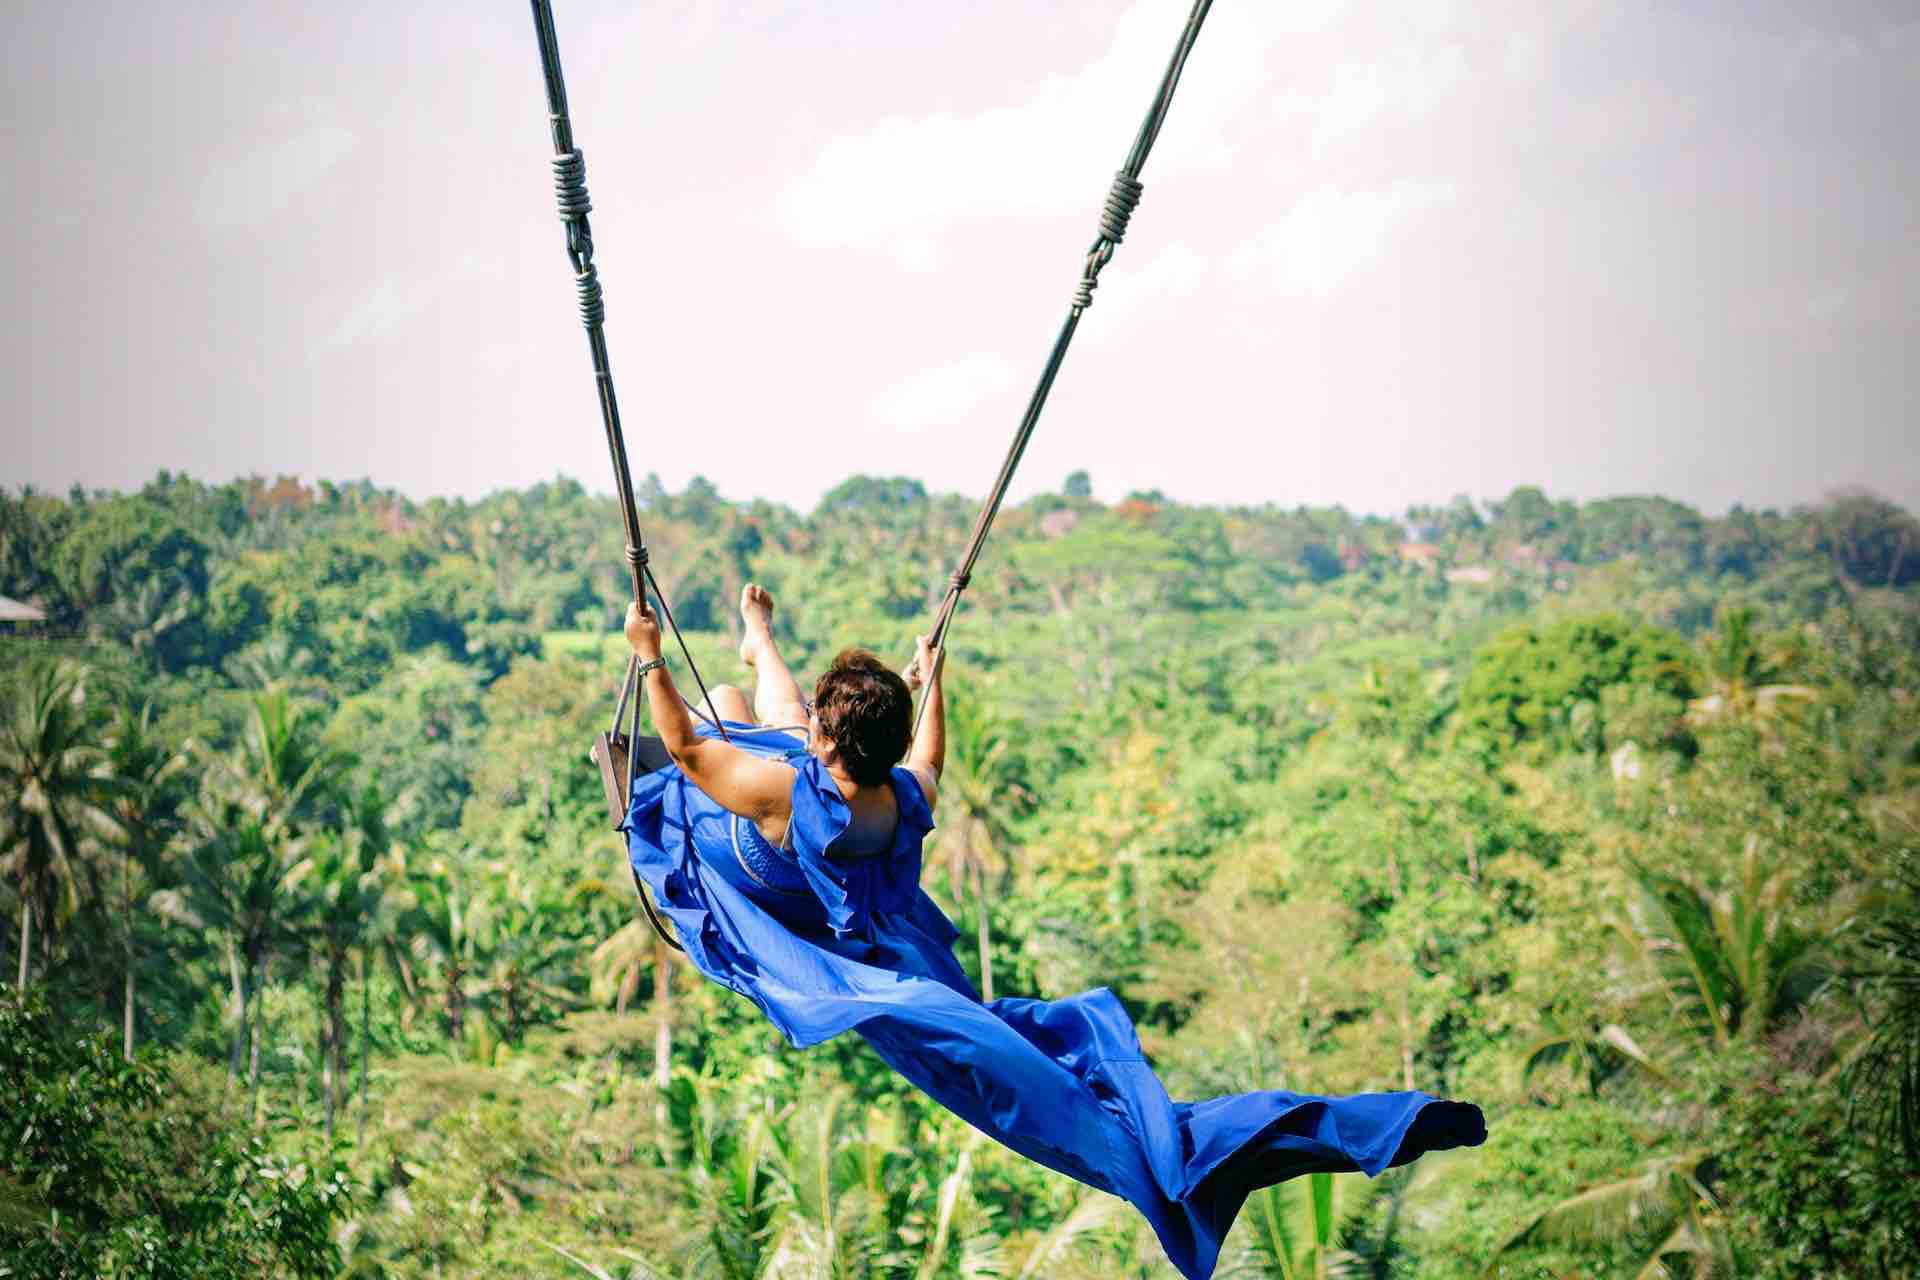 Bali Instagram tour Jungle Swing Bali woman in blue dress